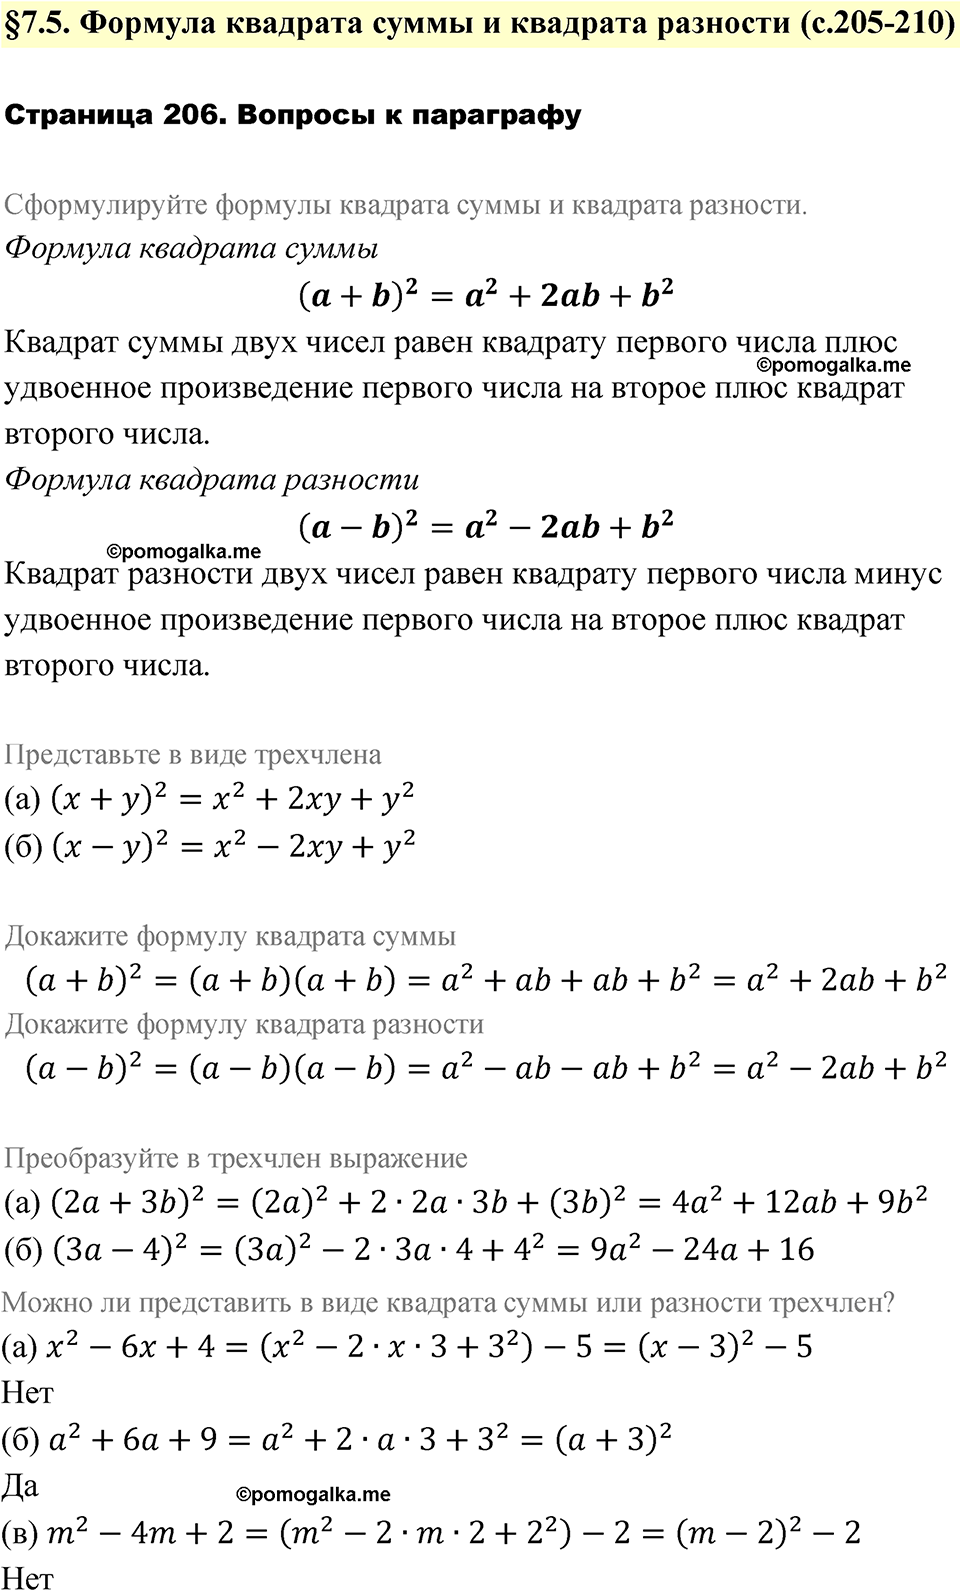 страница 206 вопросы после §7.5 алгебра 7 класс Дорофеев 2022 год